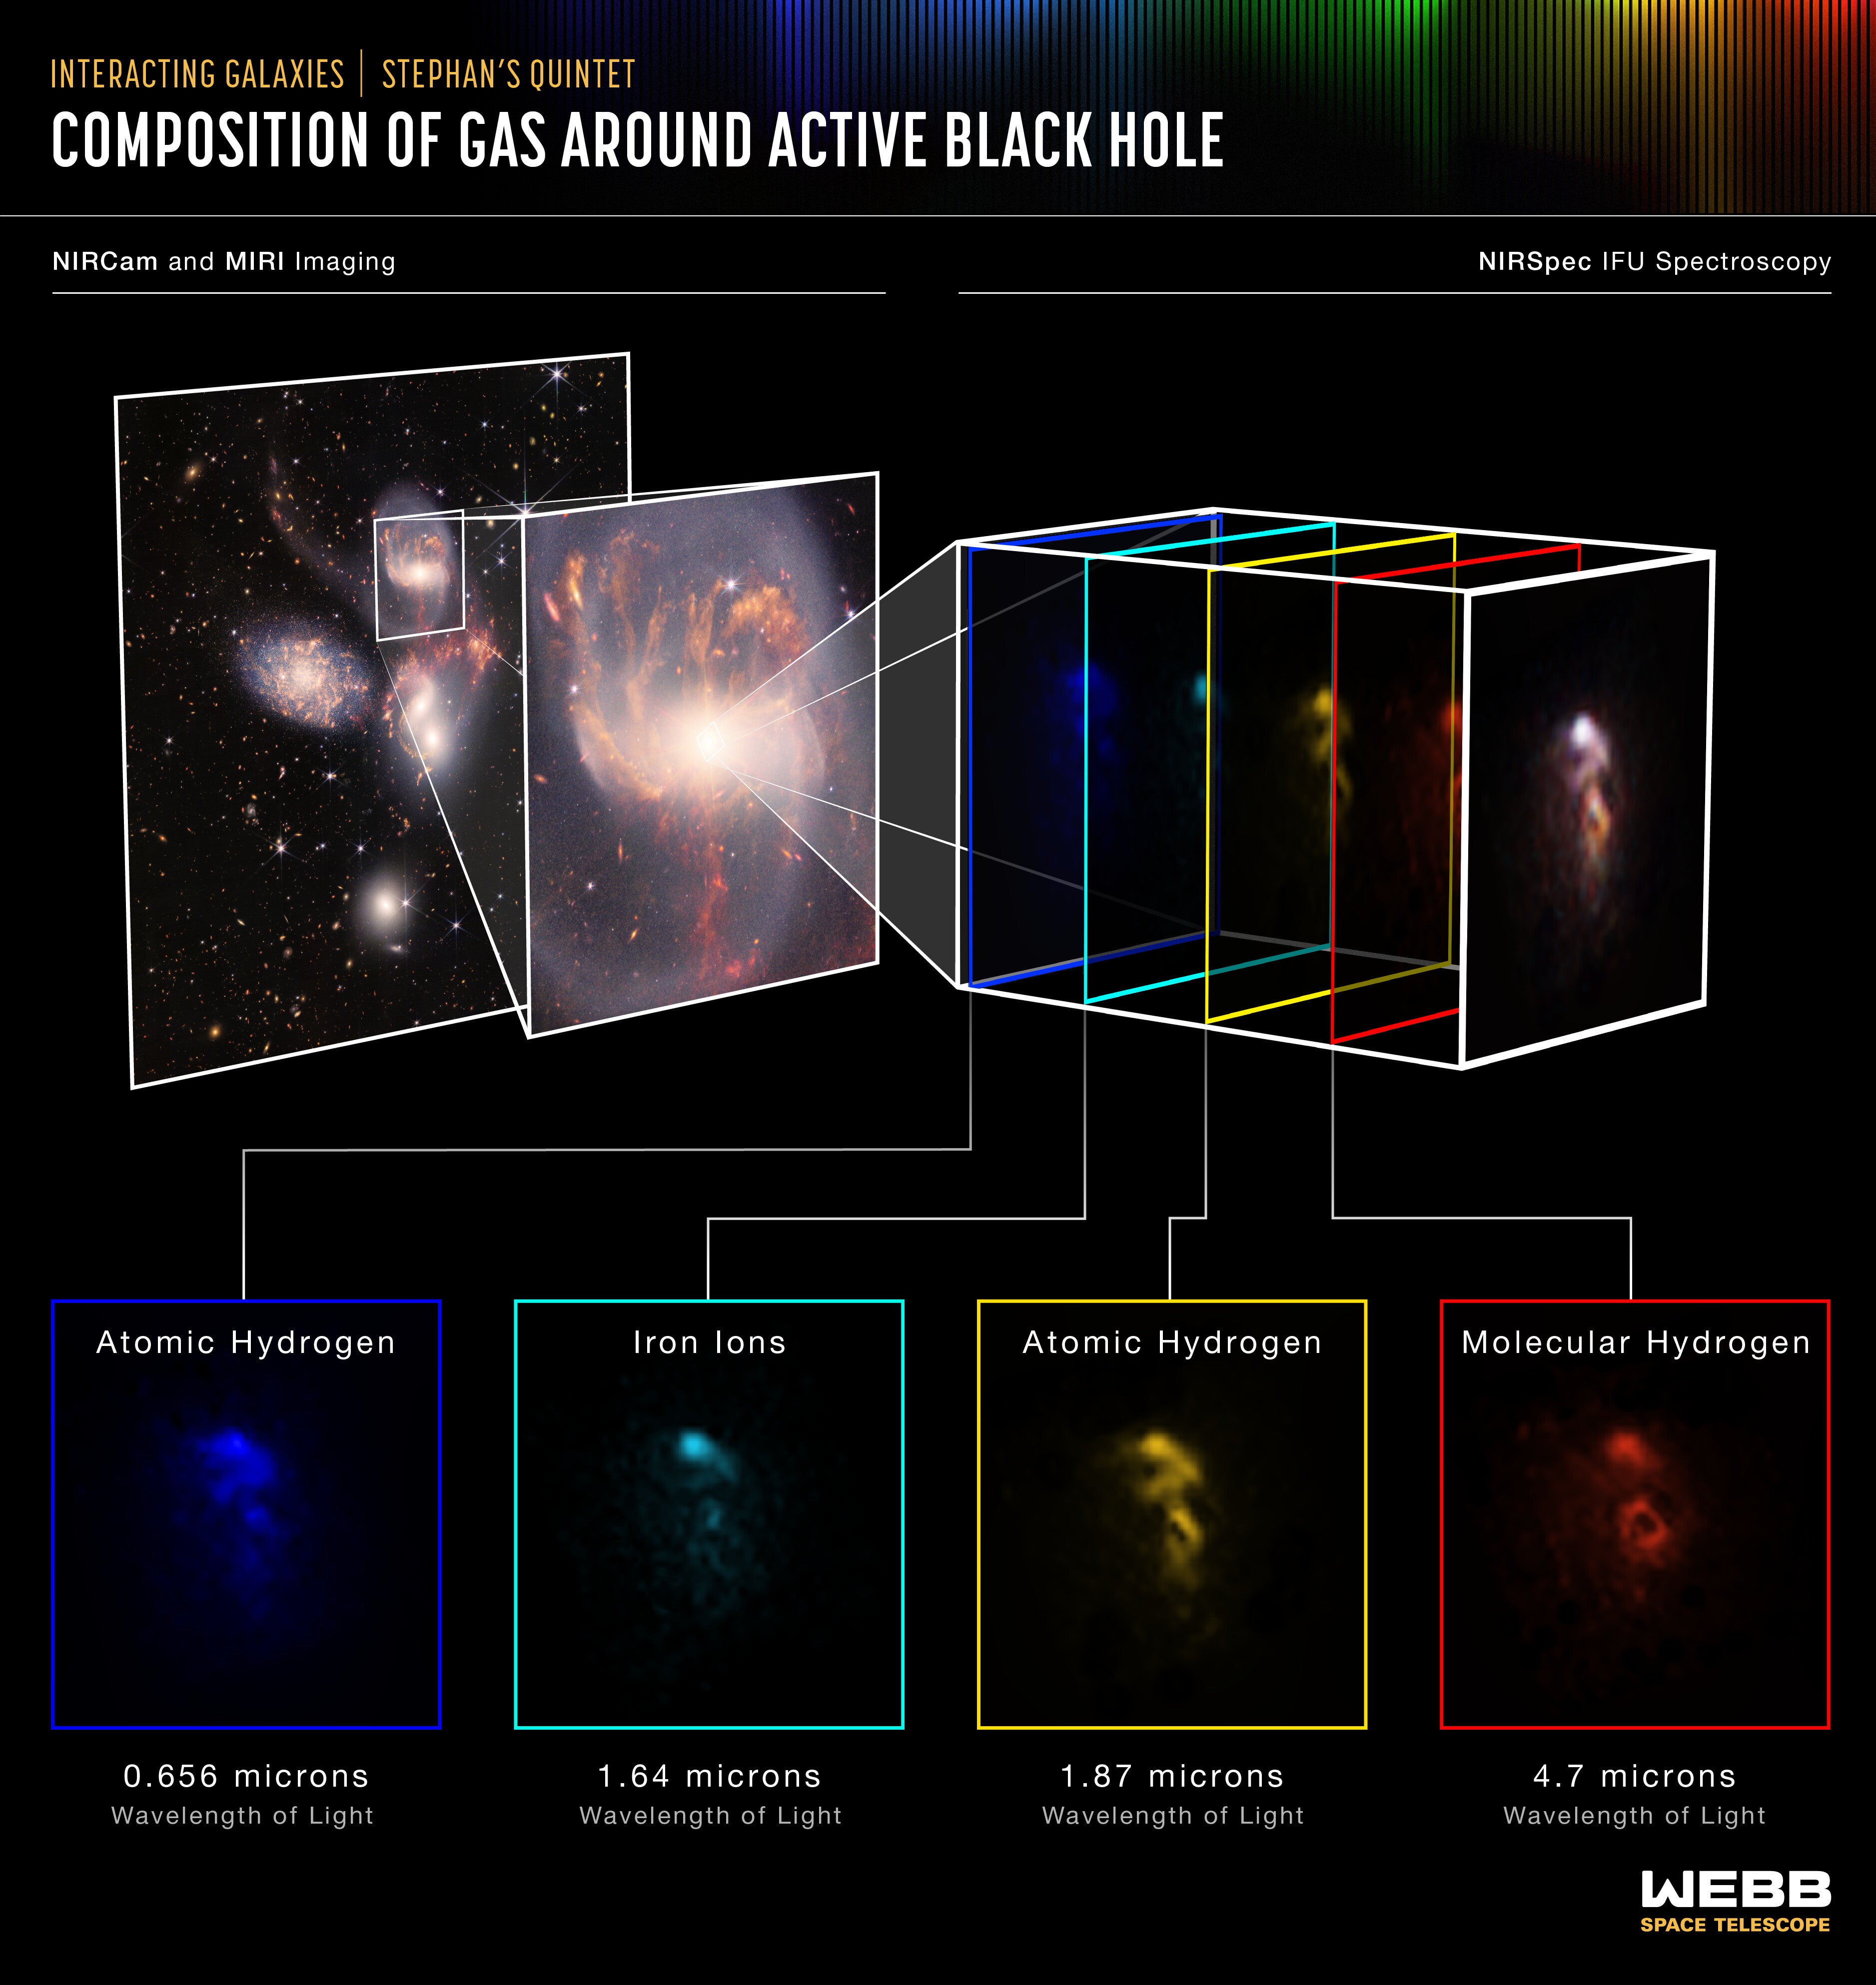 Una ilustración de la composición química y la estructura de un agujero negro supermasivo realizada por el instrumento espectrómetro de infrarrojo cercano del telescopio espacial James Webb